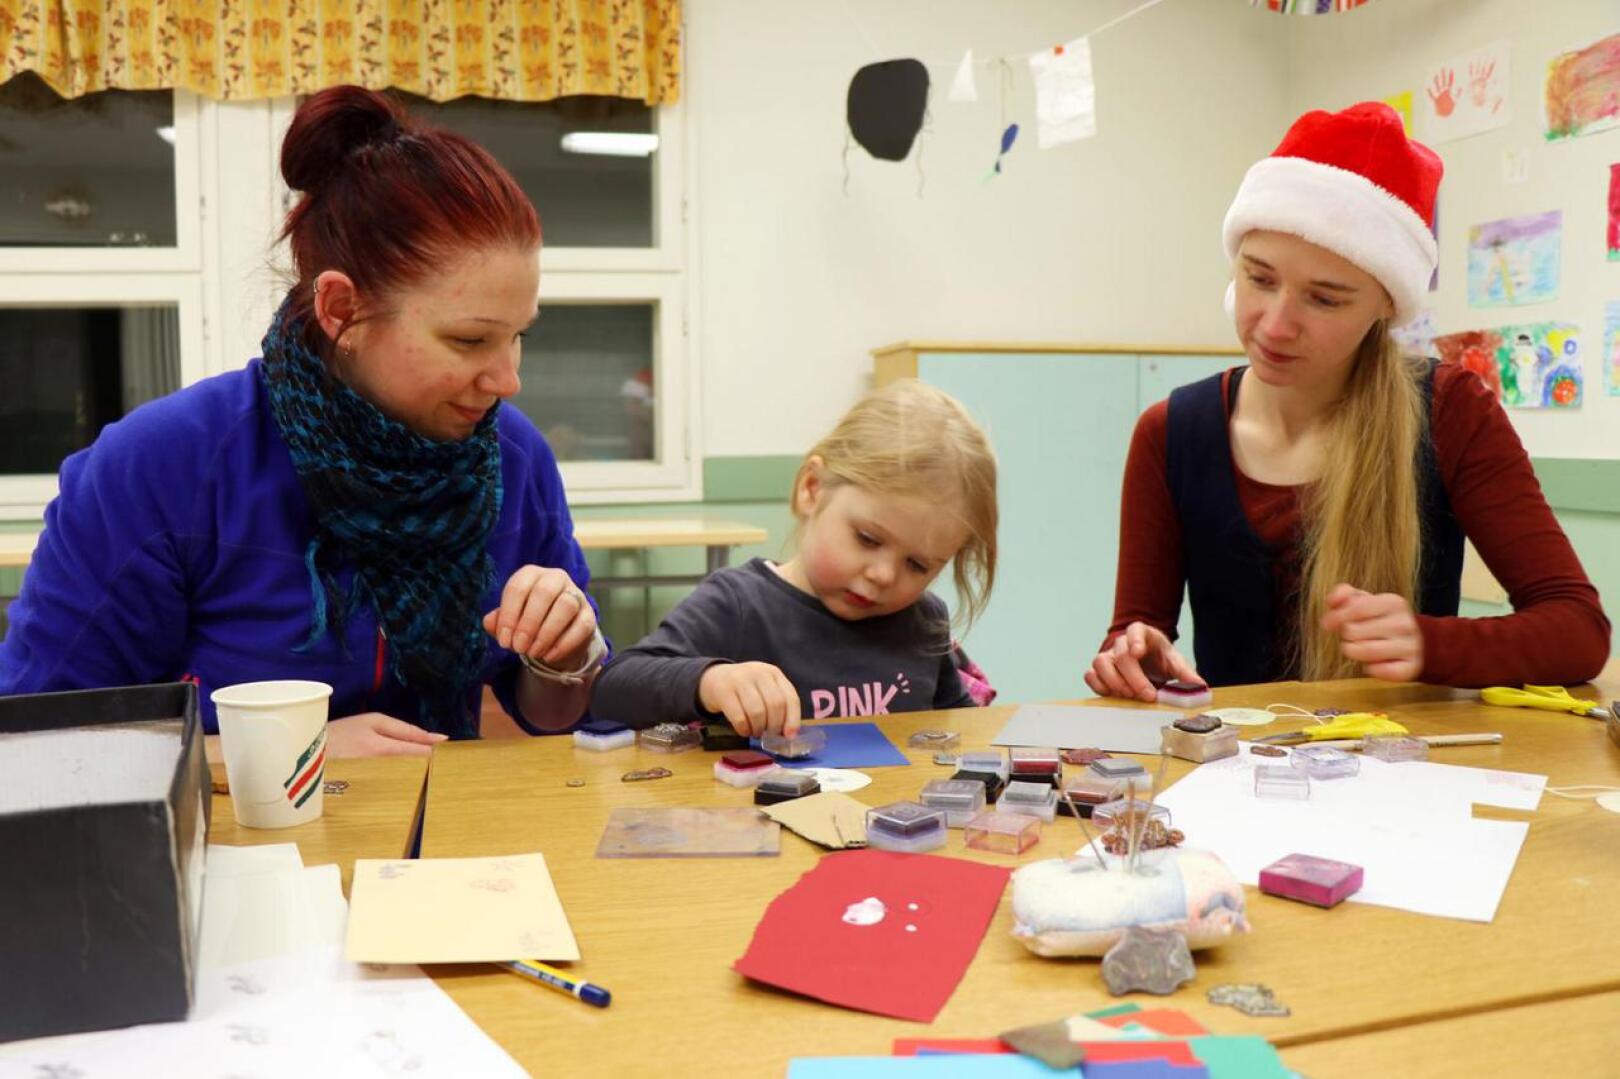 Kolmevuotias Ella Forsbacka (kesk.) keskittyi koristelemaan joulukortteja leimasimella 4H:n järjestämässä joulupajassa. Vieressä äiti Satu Forsbacka (vas.) ja 4H-yhdistyksen toiminnanohjaaja Emilia Känsälä.